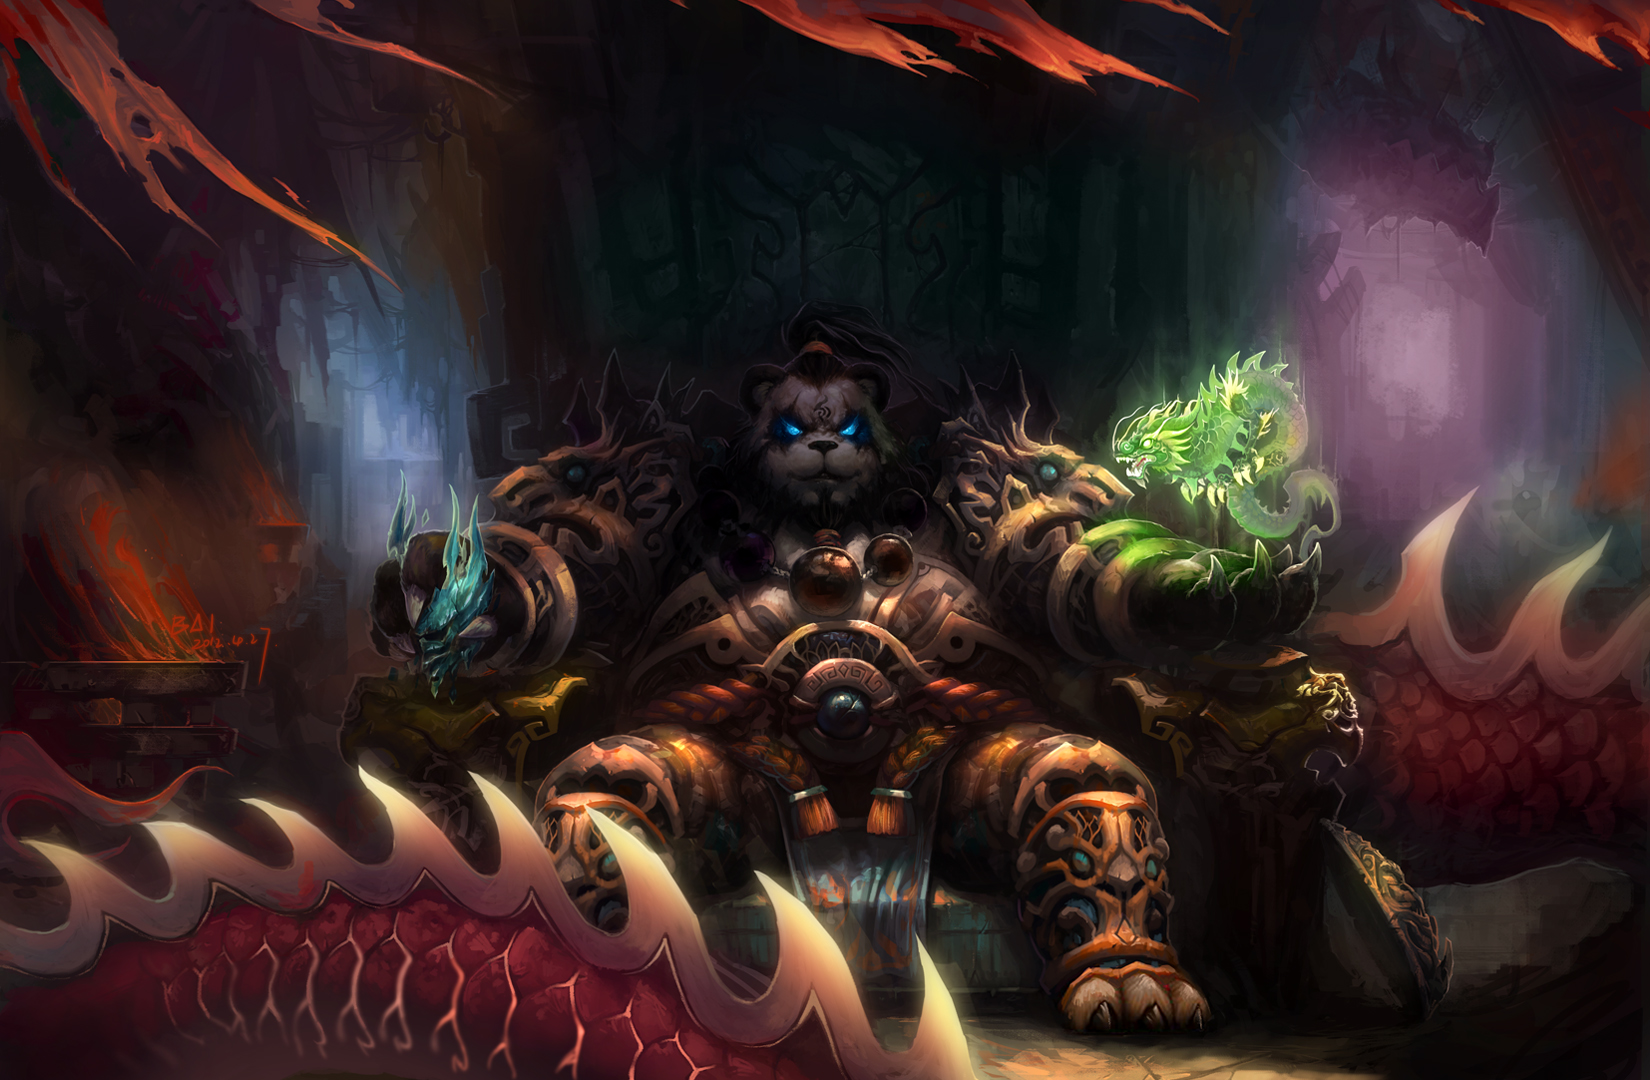 Descarga gratuita de fondo de pantalla para móvil de Warcraft, Videojuego, World Of Warcraft.